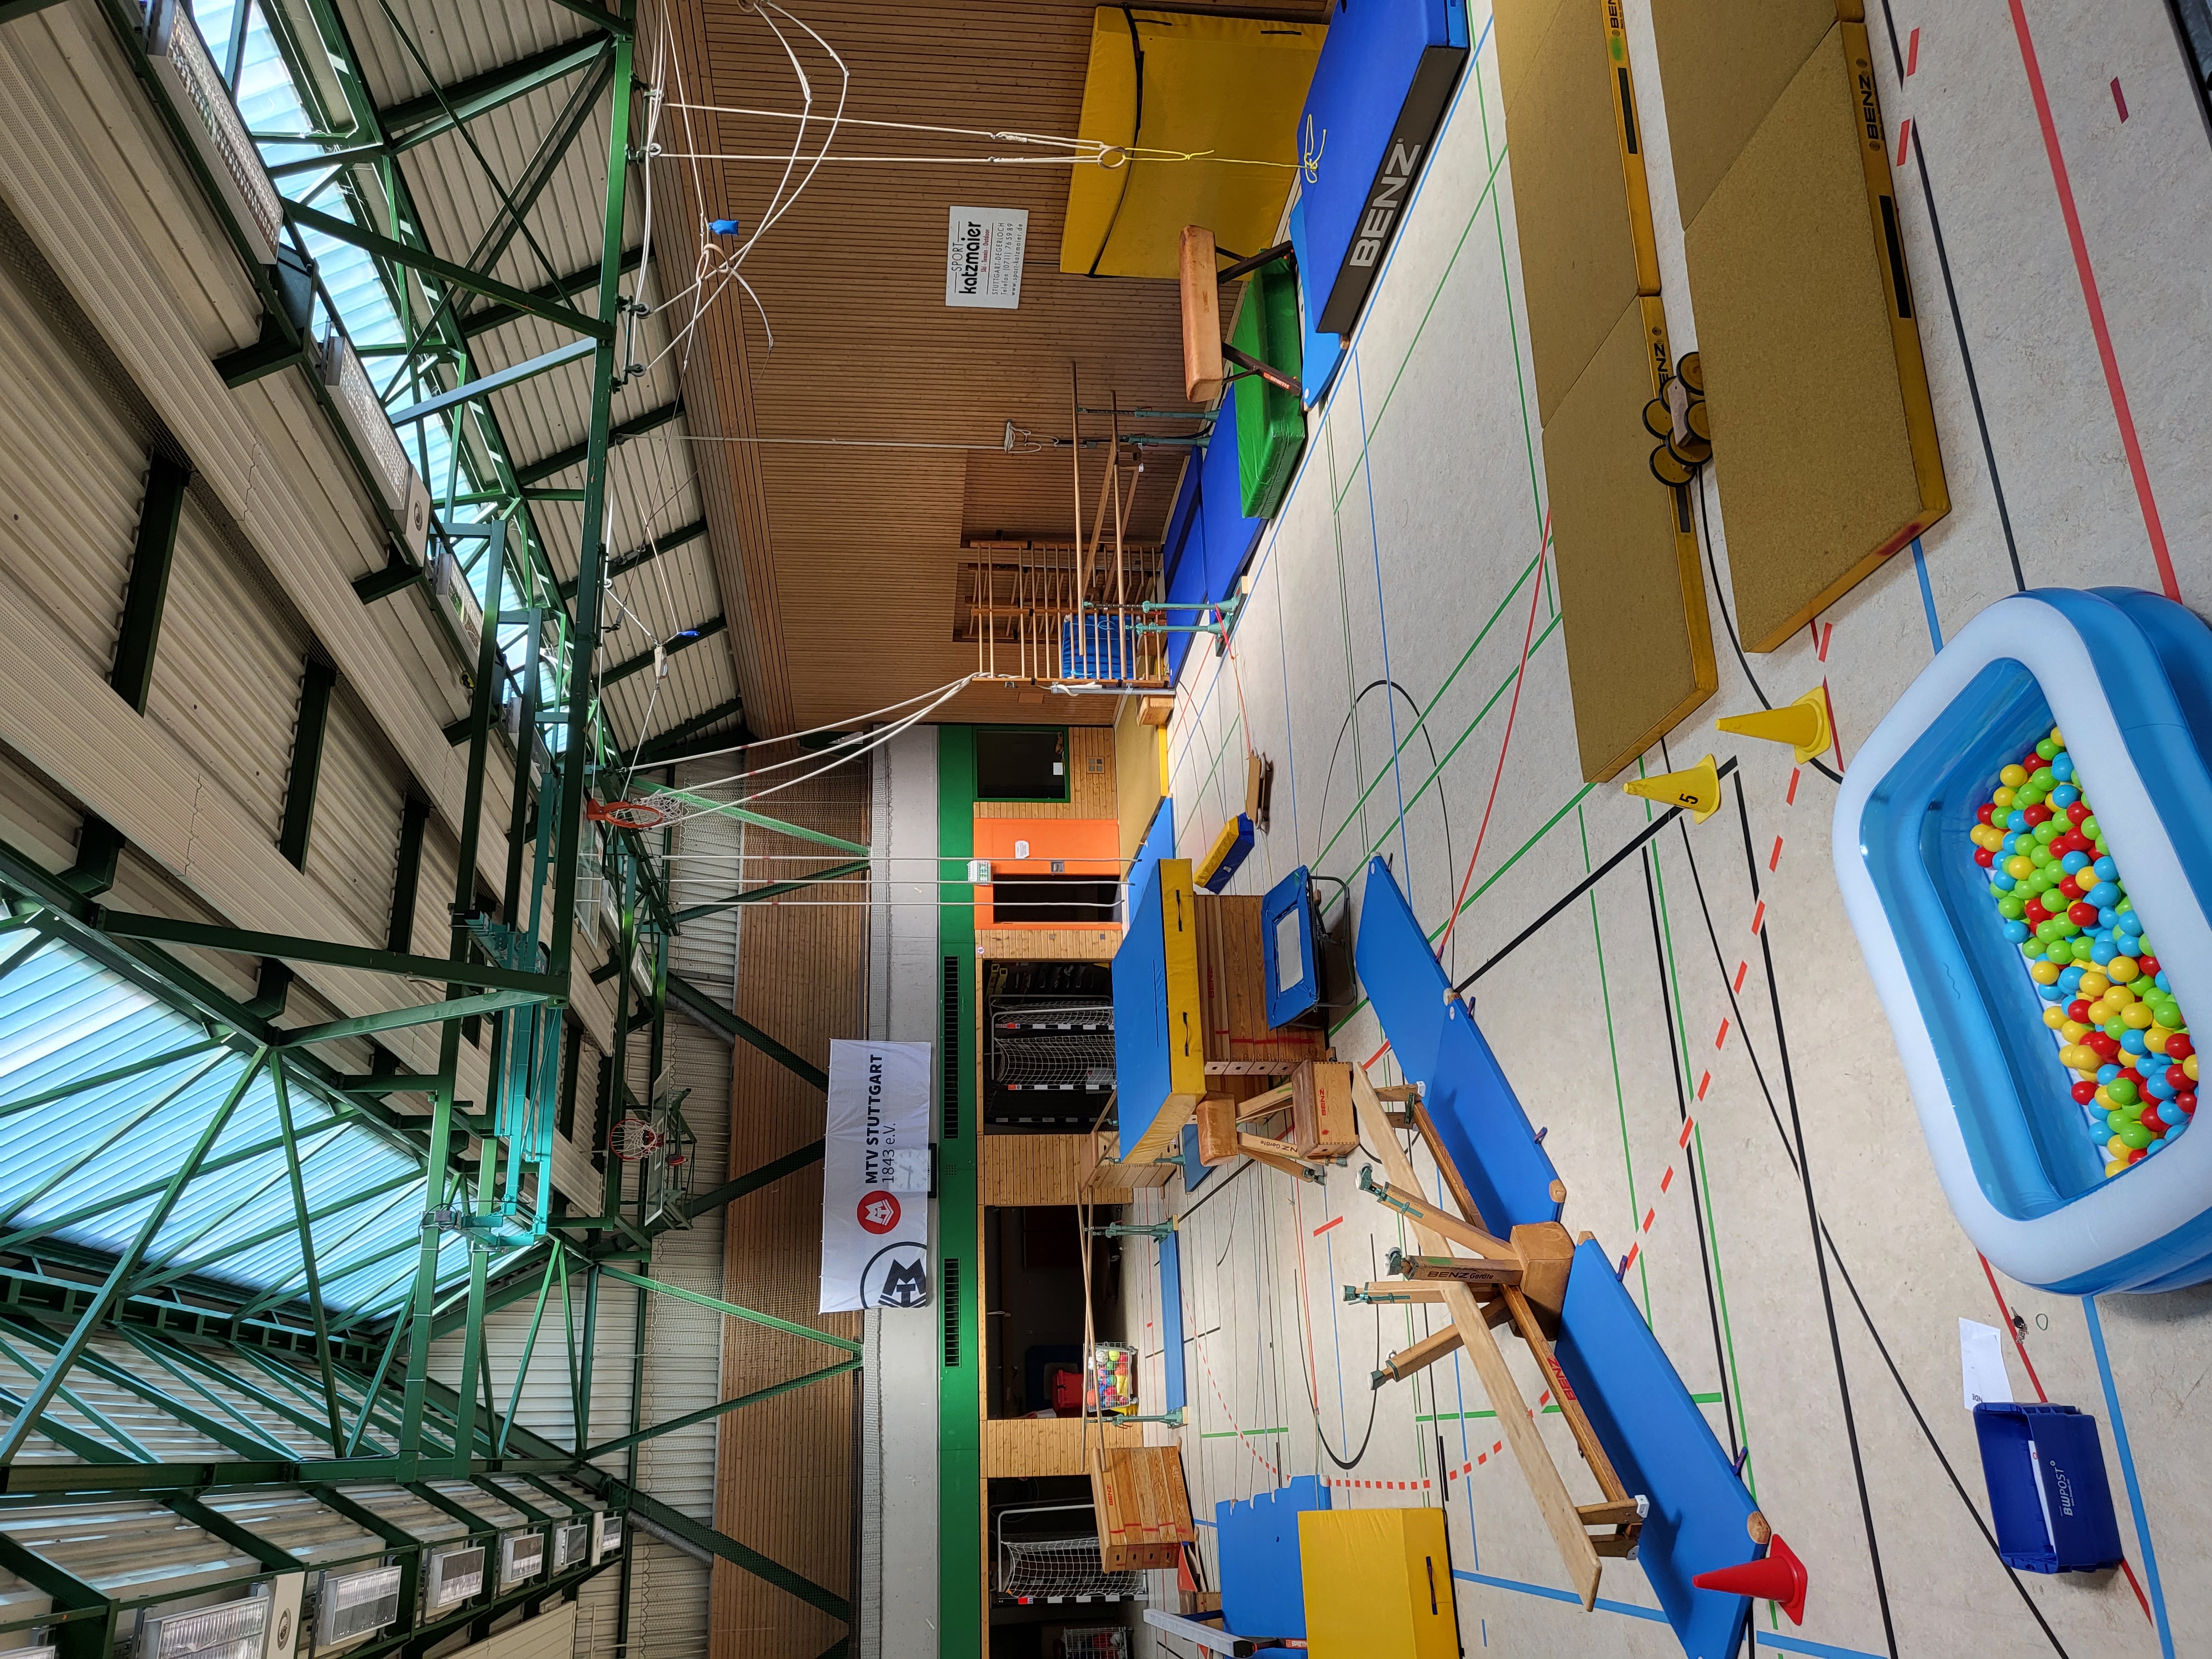 Das Bild zeigt den Turnparcours der Kindersport beim Bürgerfest West 2022. Es sind viele verschiedene Stationen in der Turnhalle aufgebaut.